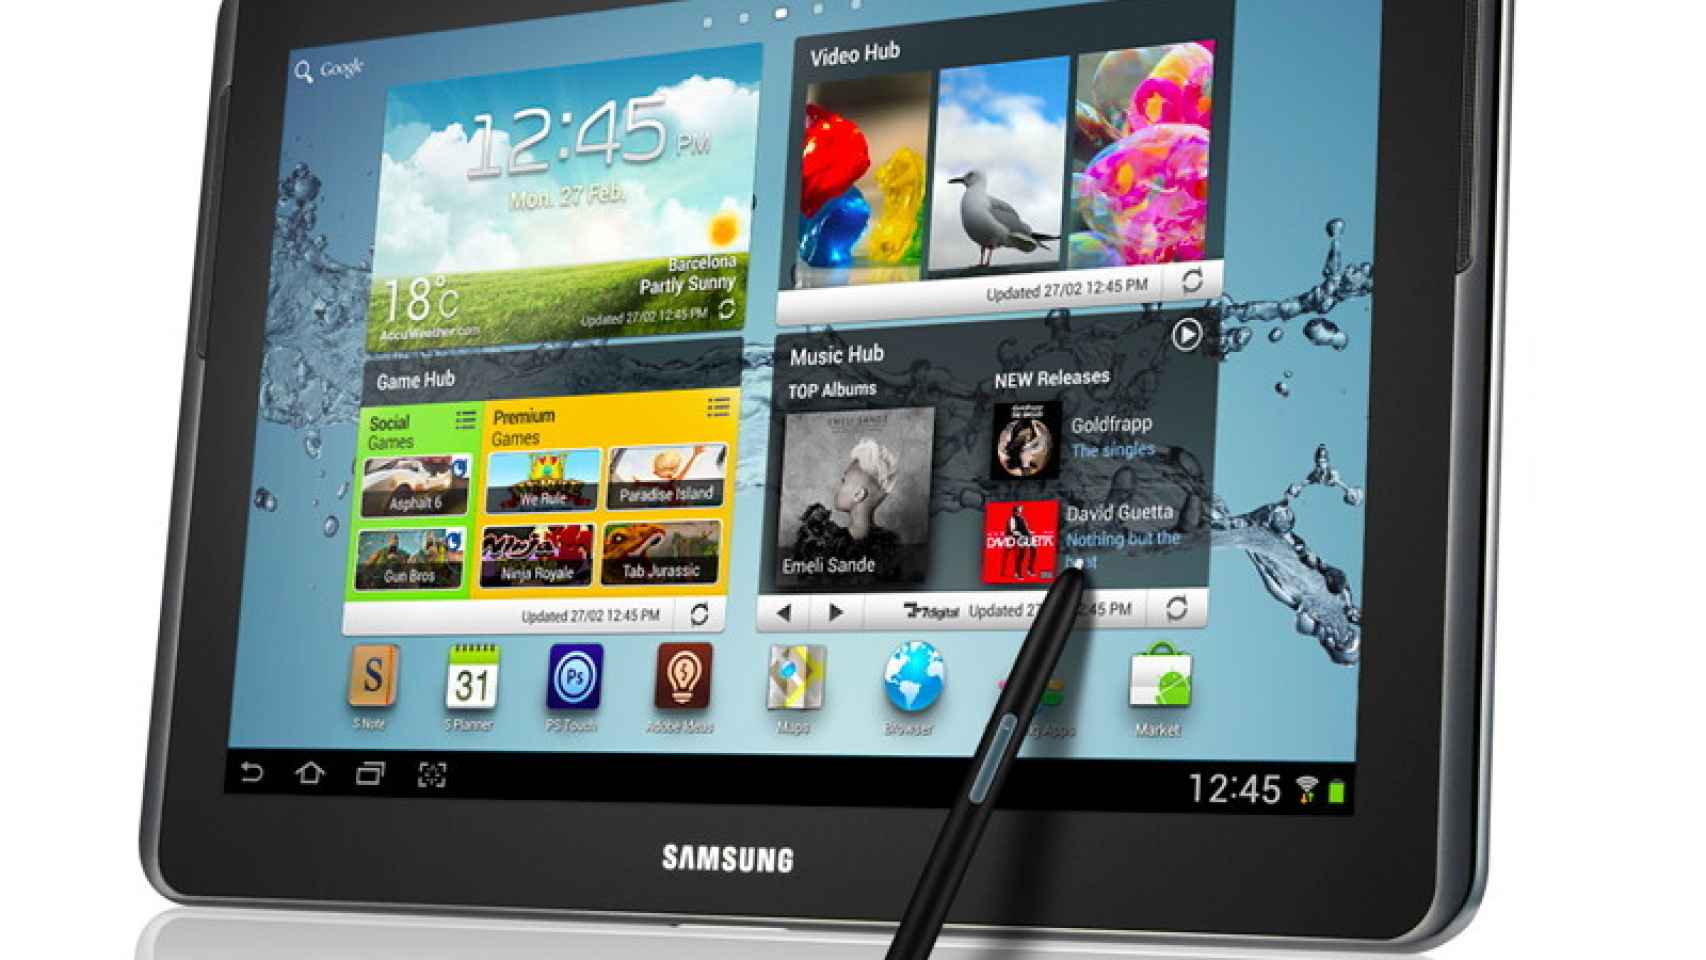 Samsung Galaxy Note 8: La próxima tablet de Samsung con procesador quad-core, 2 GB de RAM y Android 4.2